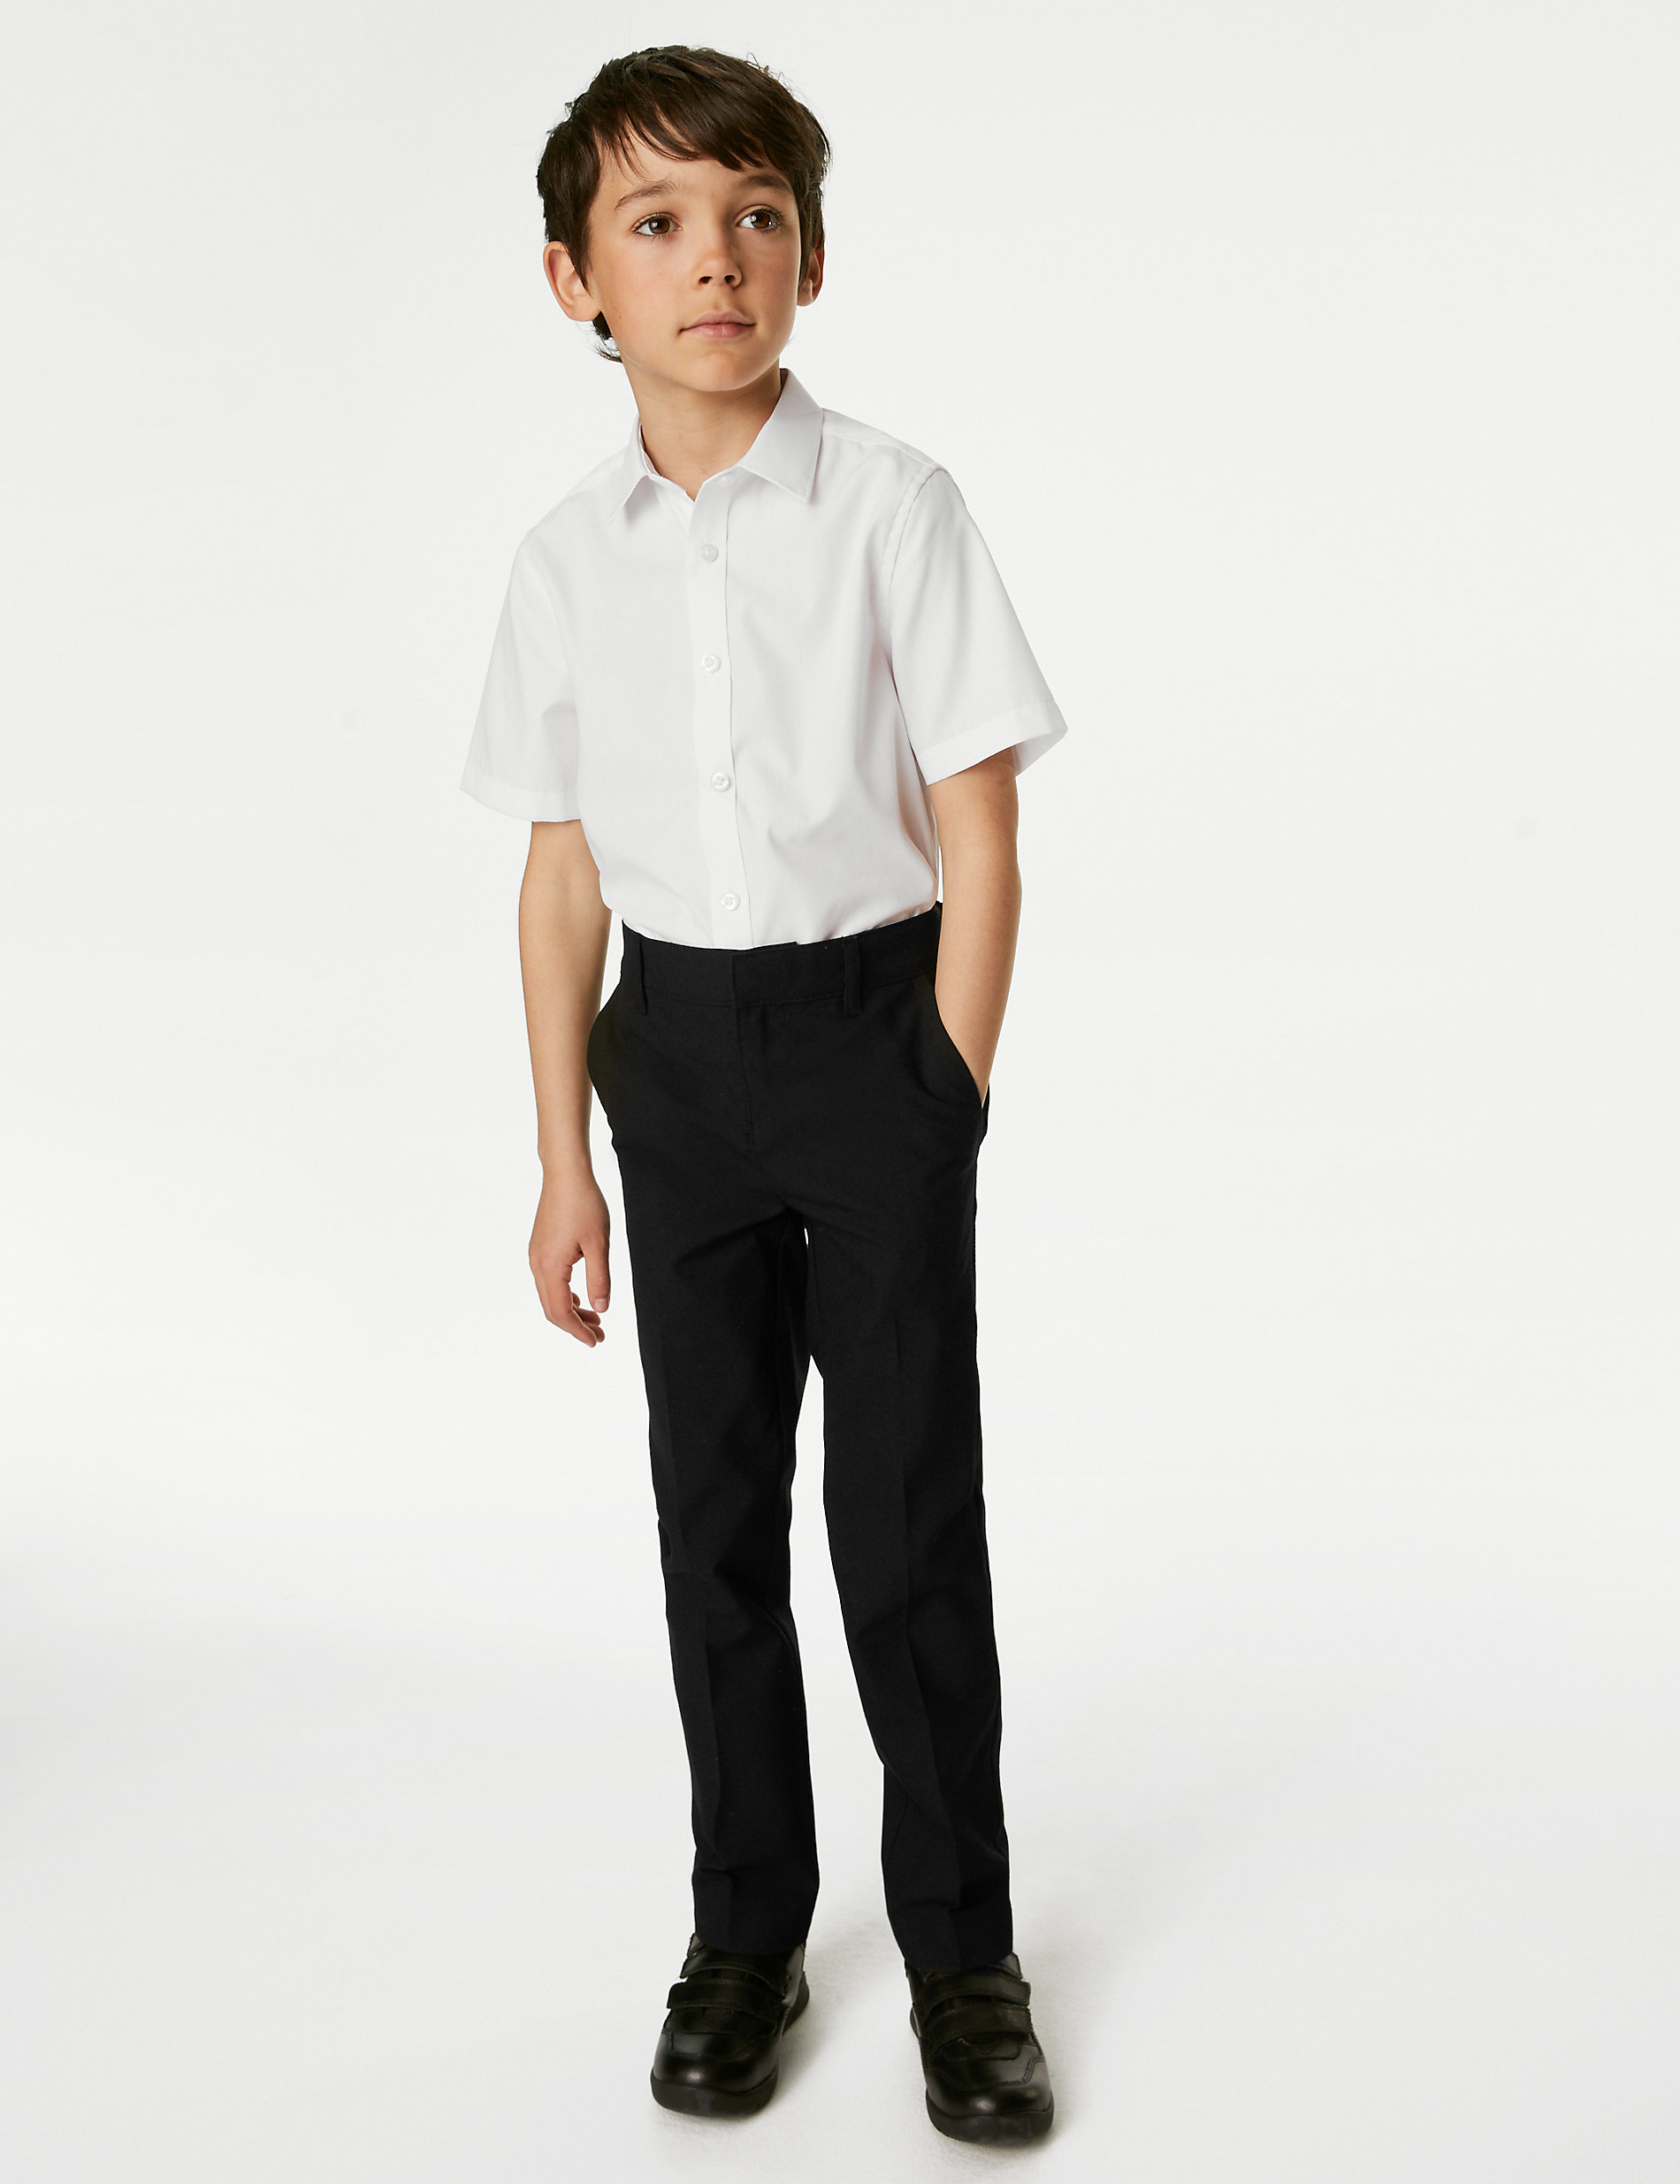 Σχολικό παντελόνι με φαρδιά μέση και κανονική εφαρμογή στα μπατζάκια για αγόρια (2-18 ετών)